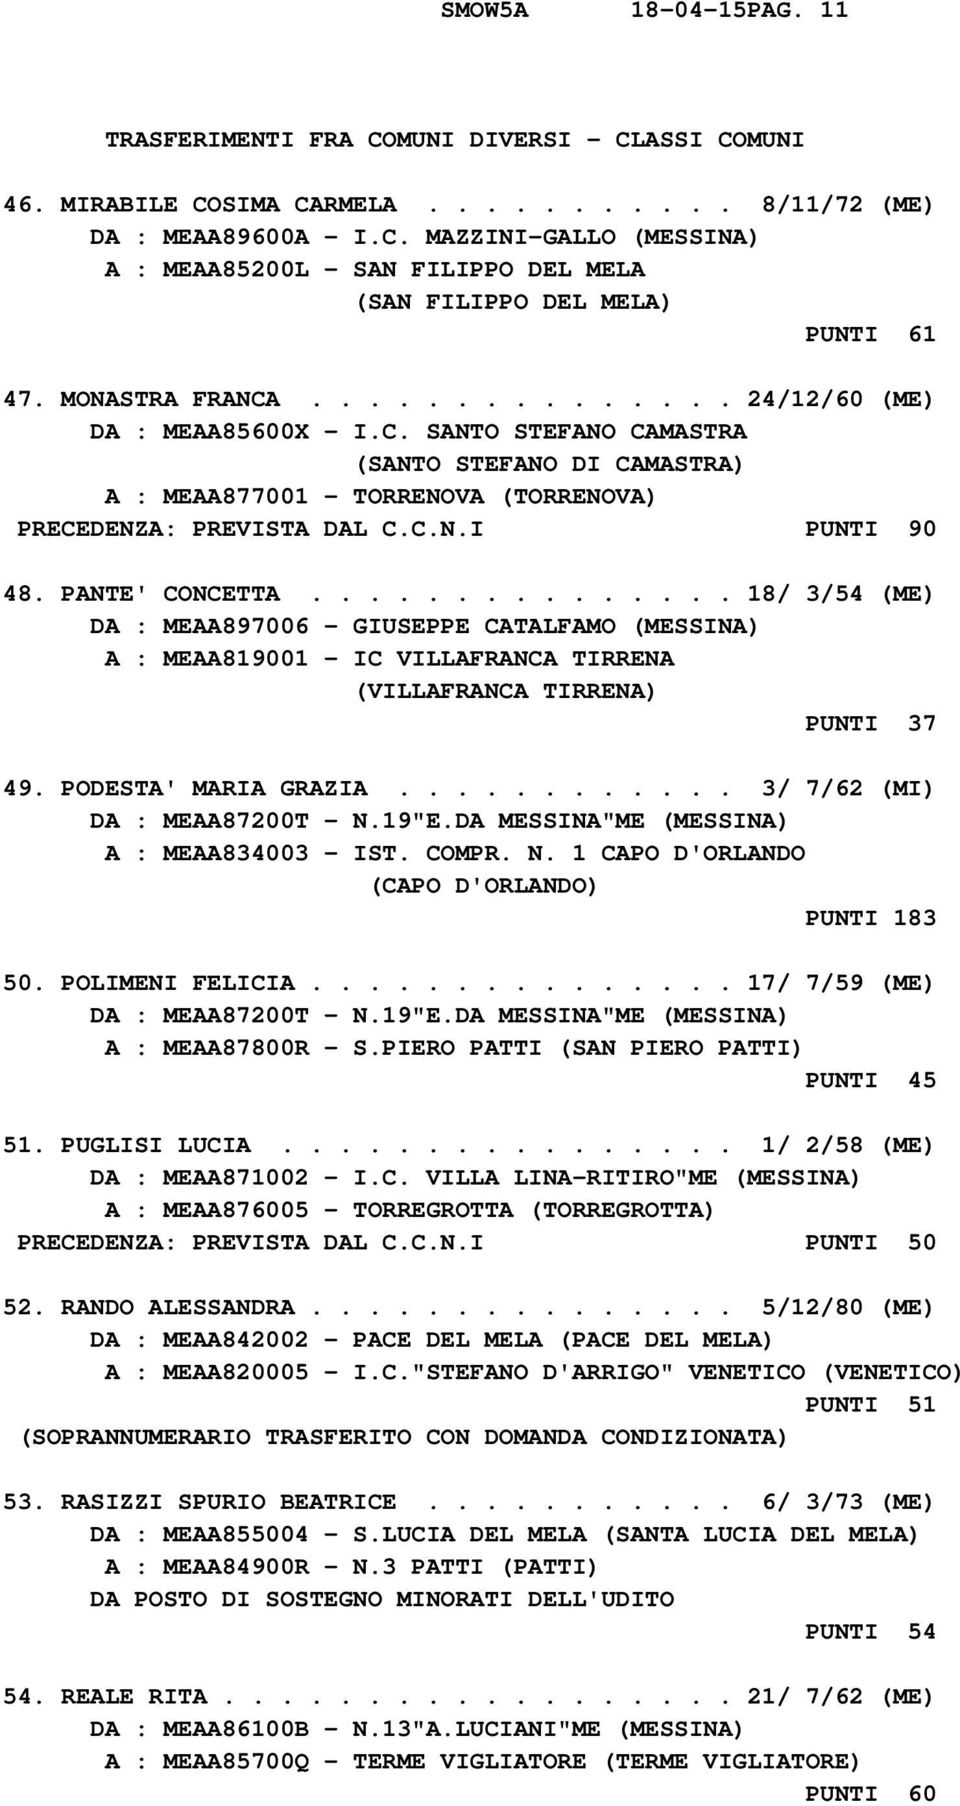 PANTE' CONCETTA............... 18/ 3/54 (ME) DA : MEAA897006 - GIUSEPPE CATALFAMO (MESSINA) A : MEAA819001 - IC VILLAFRANCA TIRRENA (VILLAFRANCA TIRRENA) PUNTI 37 49. PODESTA' MARIA GRAZIA.